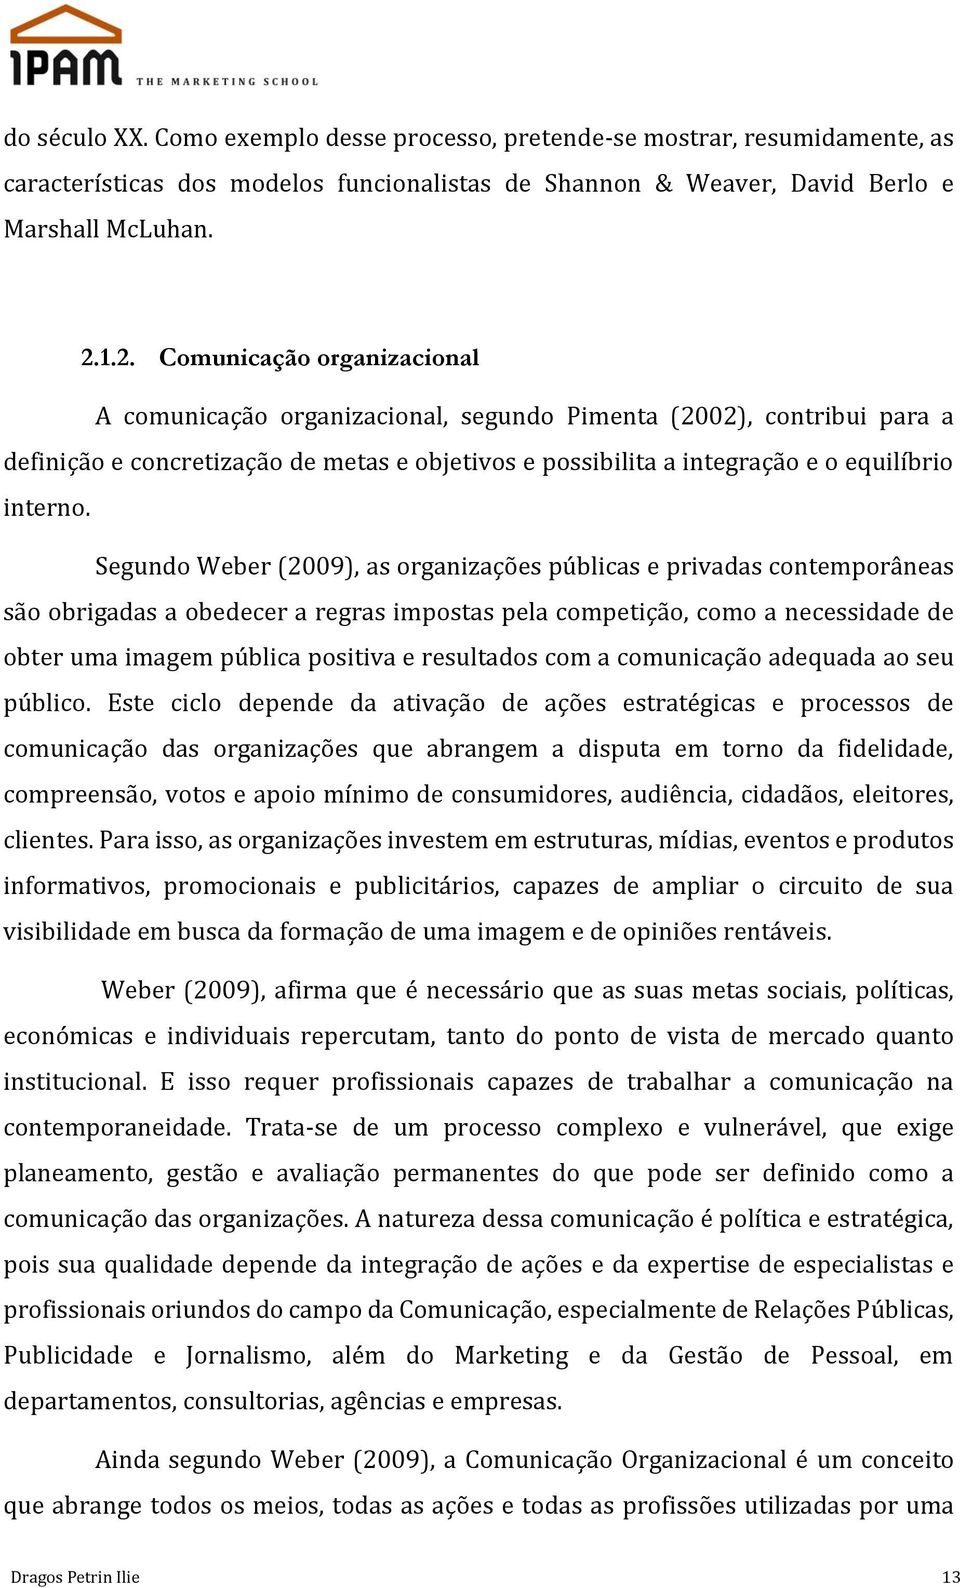 Segundo Weber (2009), as organizações públicas e privadas contemporâneas são obrigadas a obedecer a regras impostas pela competição, como a necessidade de obter uma imagem pública positiva e